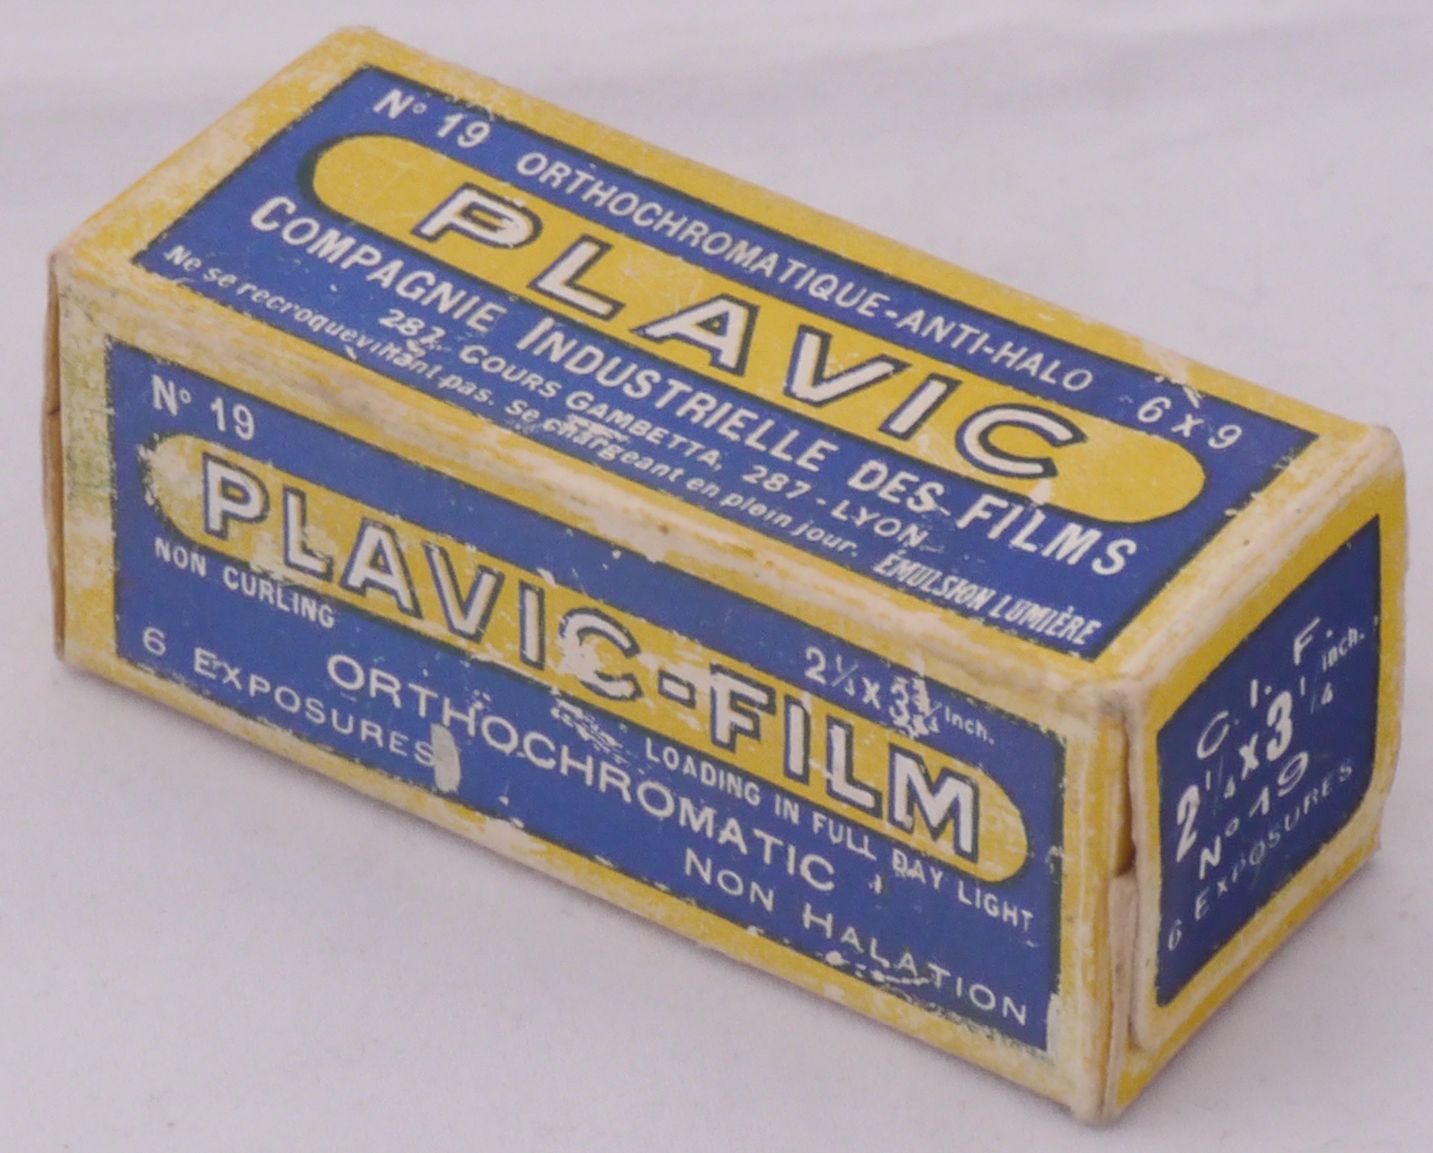 Compagnie Industrielle des Films Plavic n°19 - Format 6x9 cm